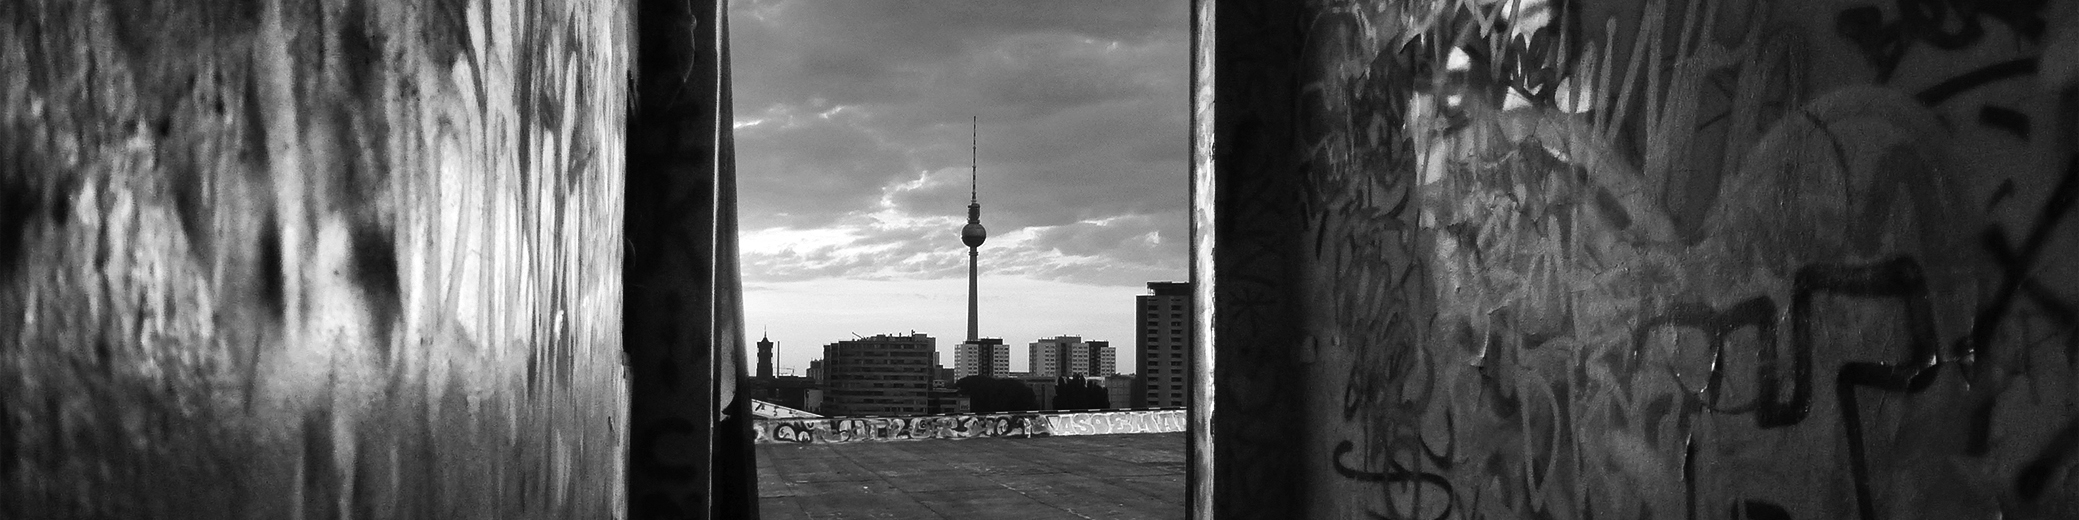 Fernseheturm von Berlin fotografiert von der Dach eine Alte verlassene Seifefabrik